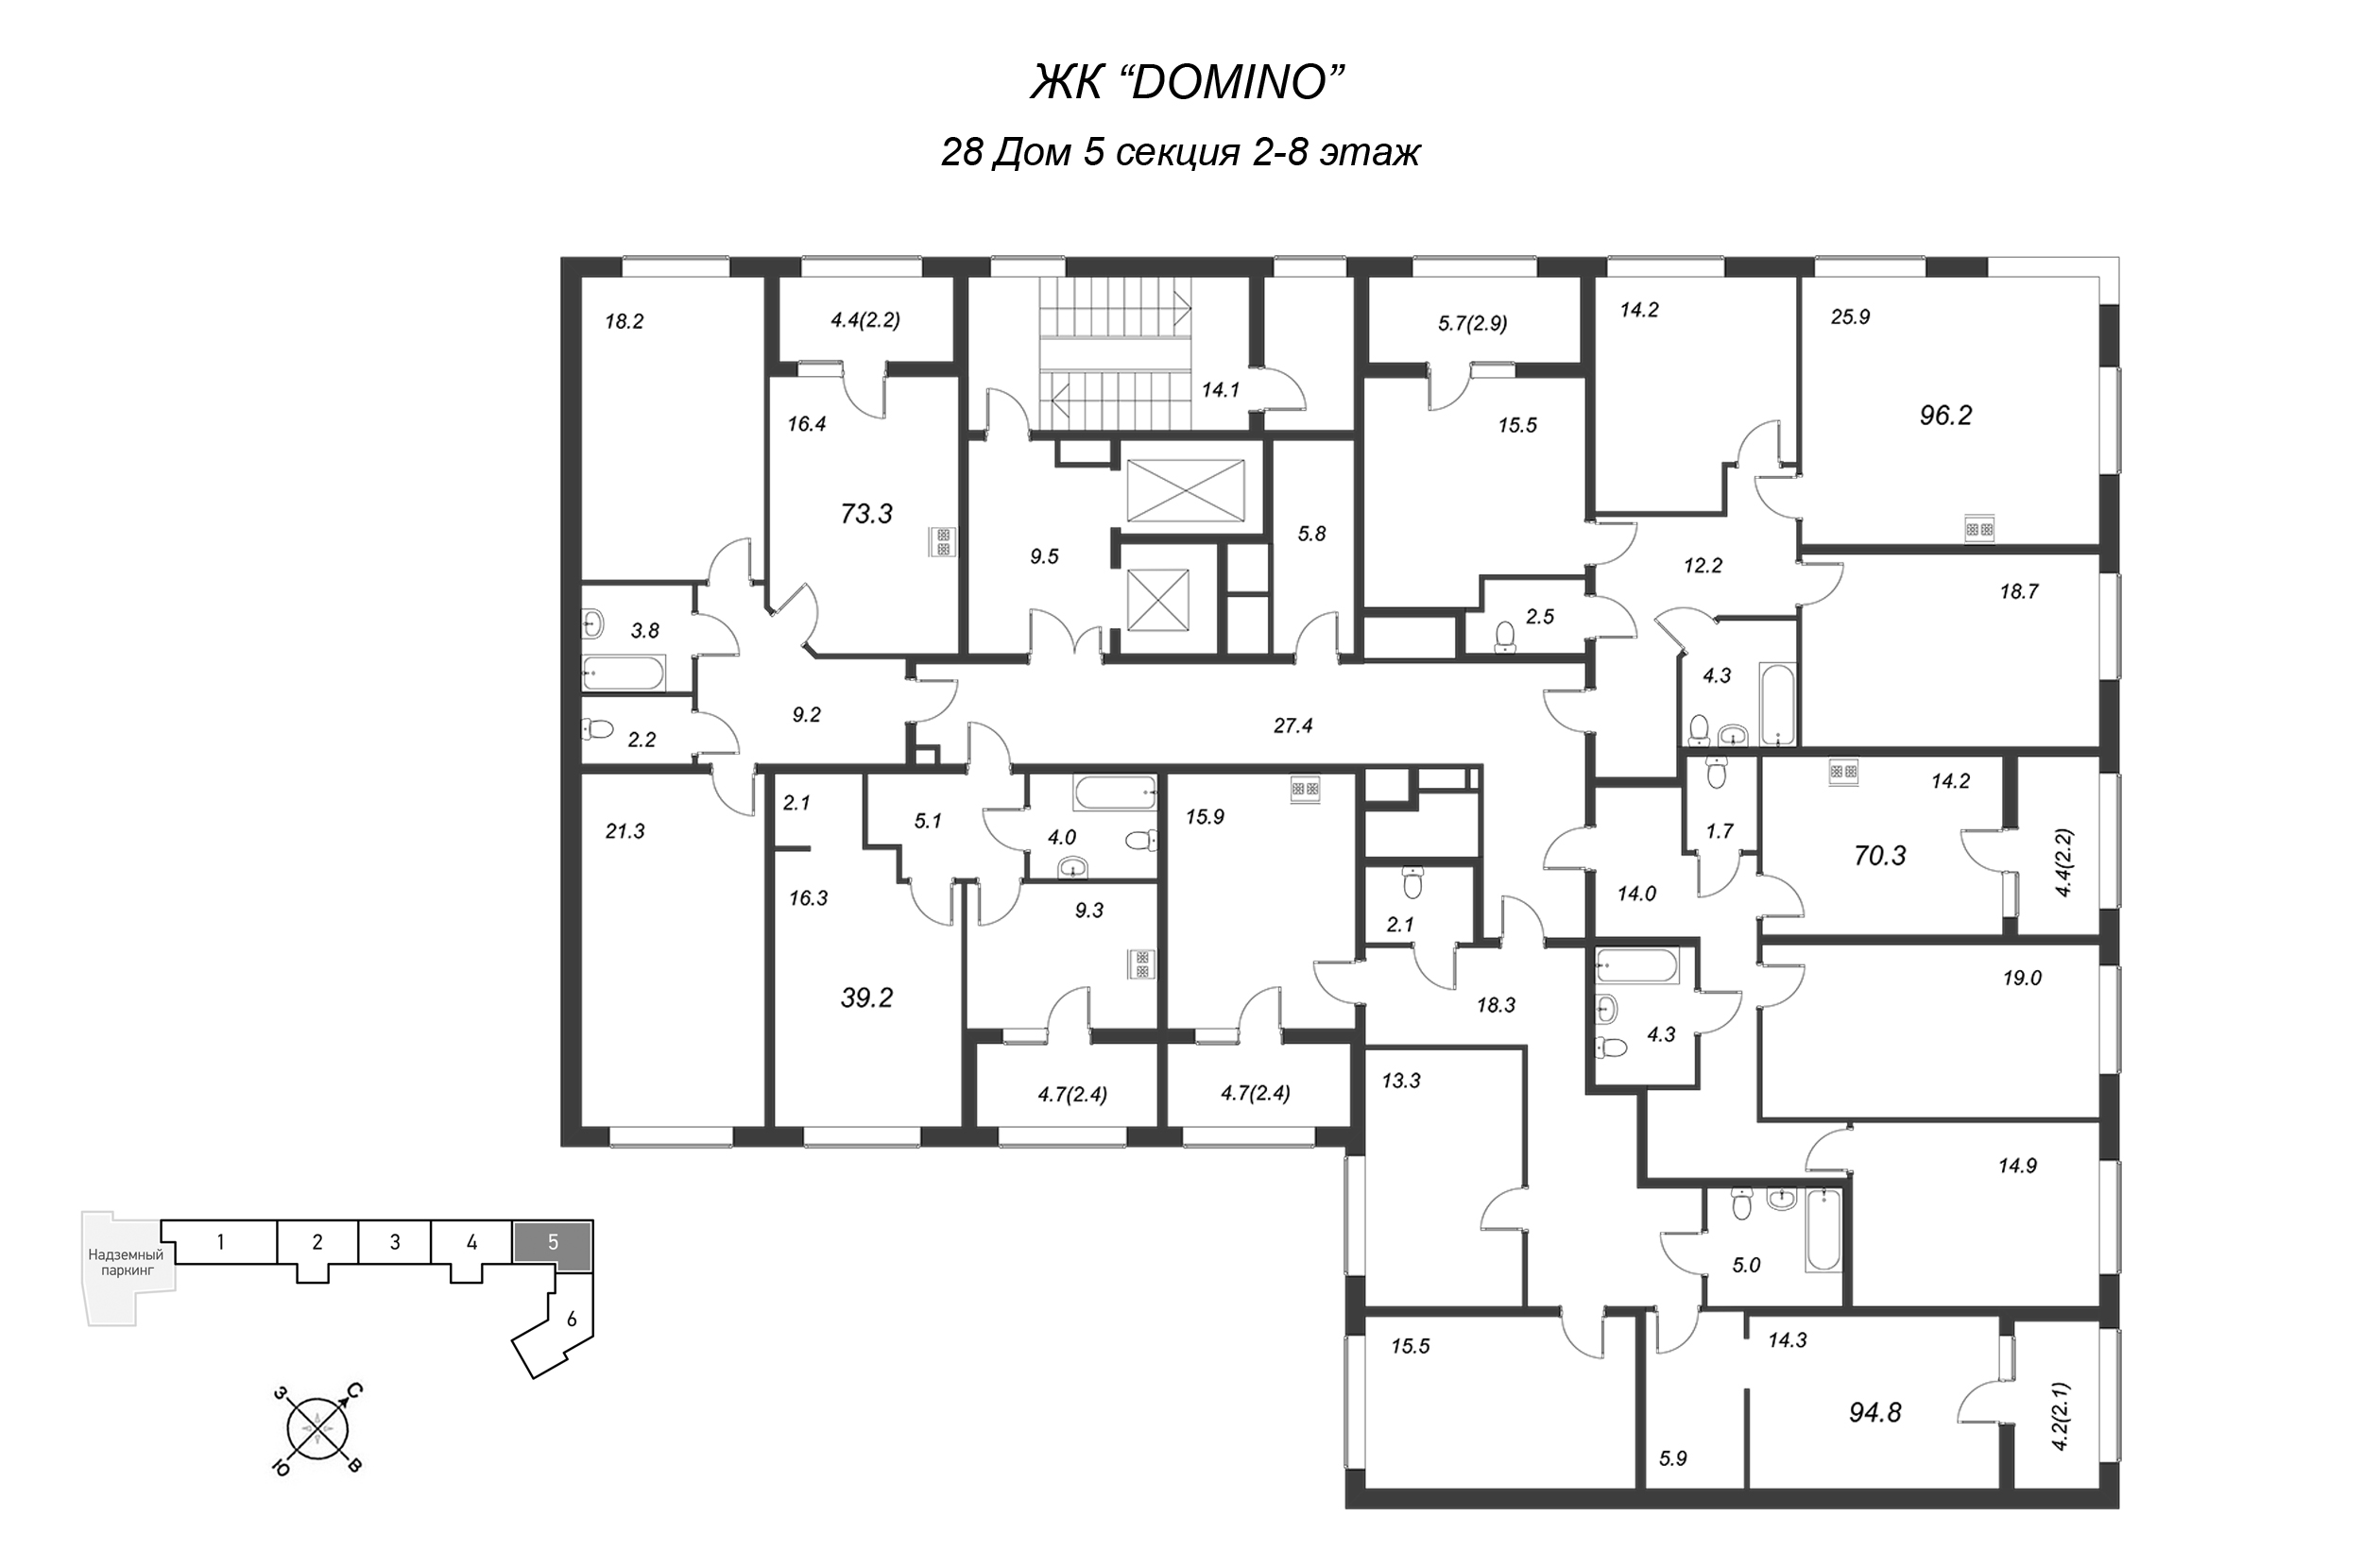 2-комнатная квартира, 70.3 м² в ЖК "Domino" - планировка этажа